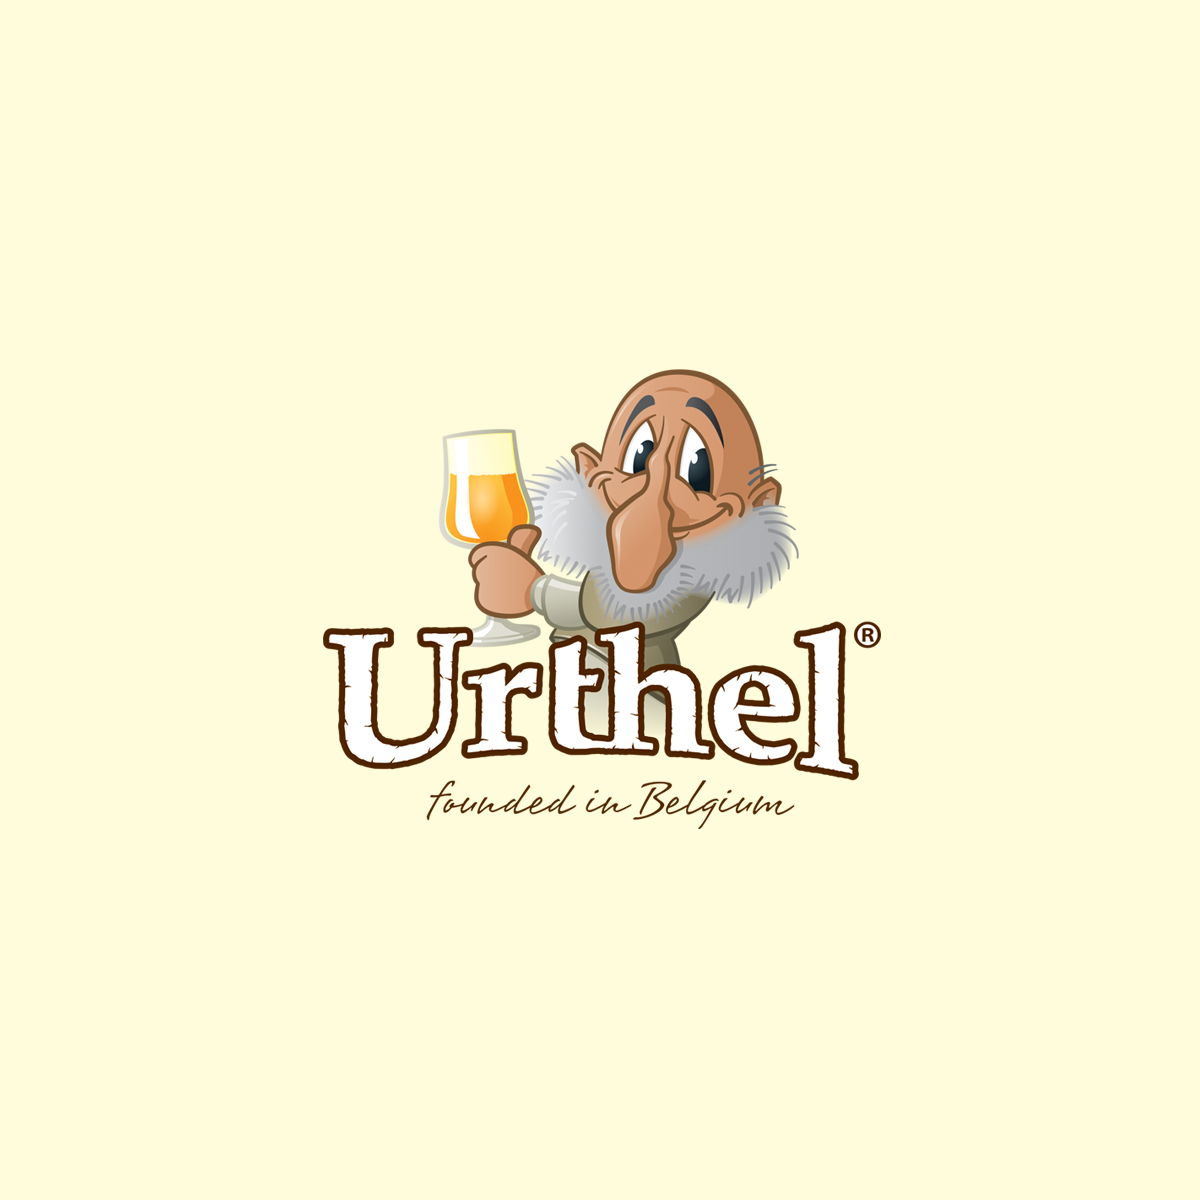 (c) Urthel.com